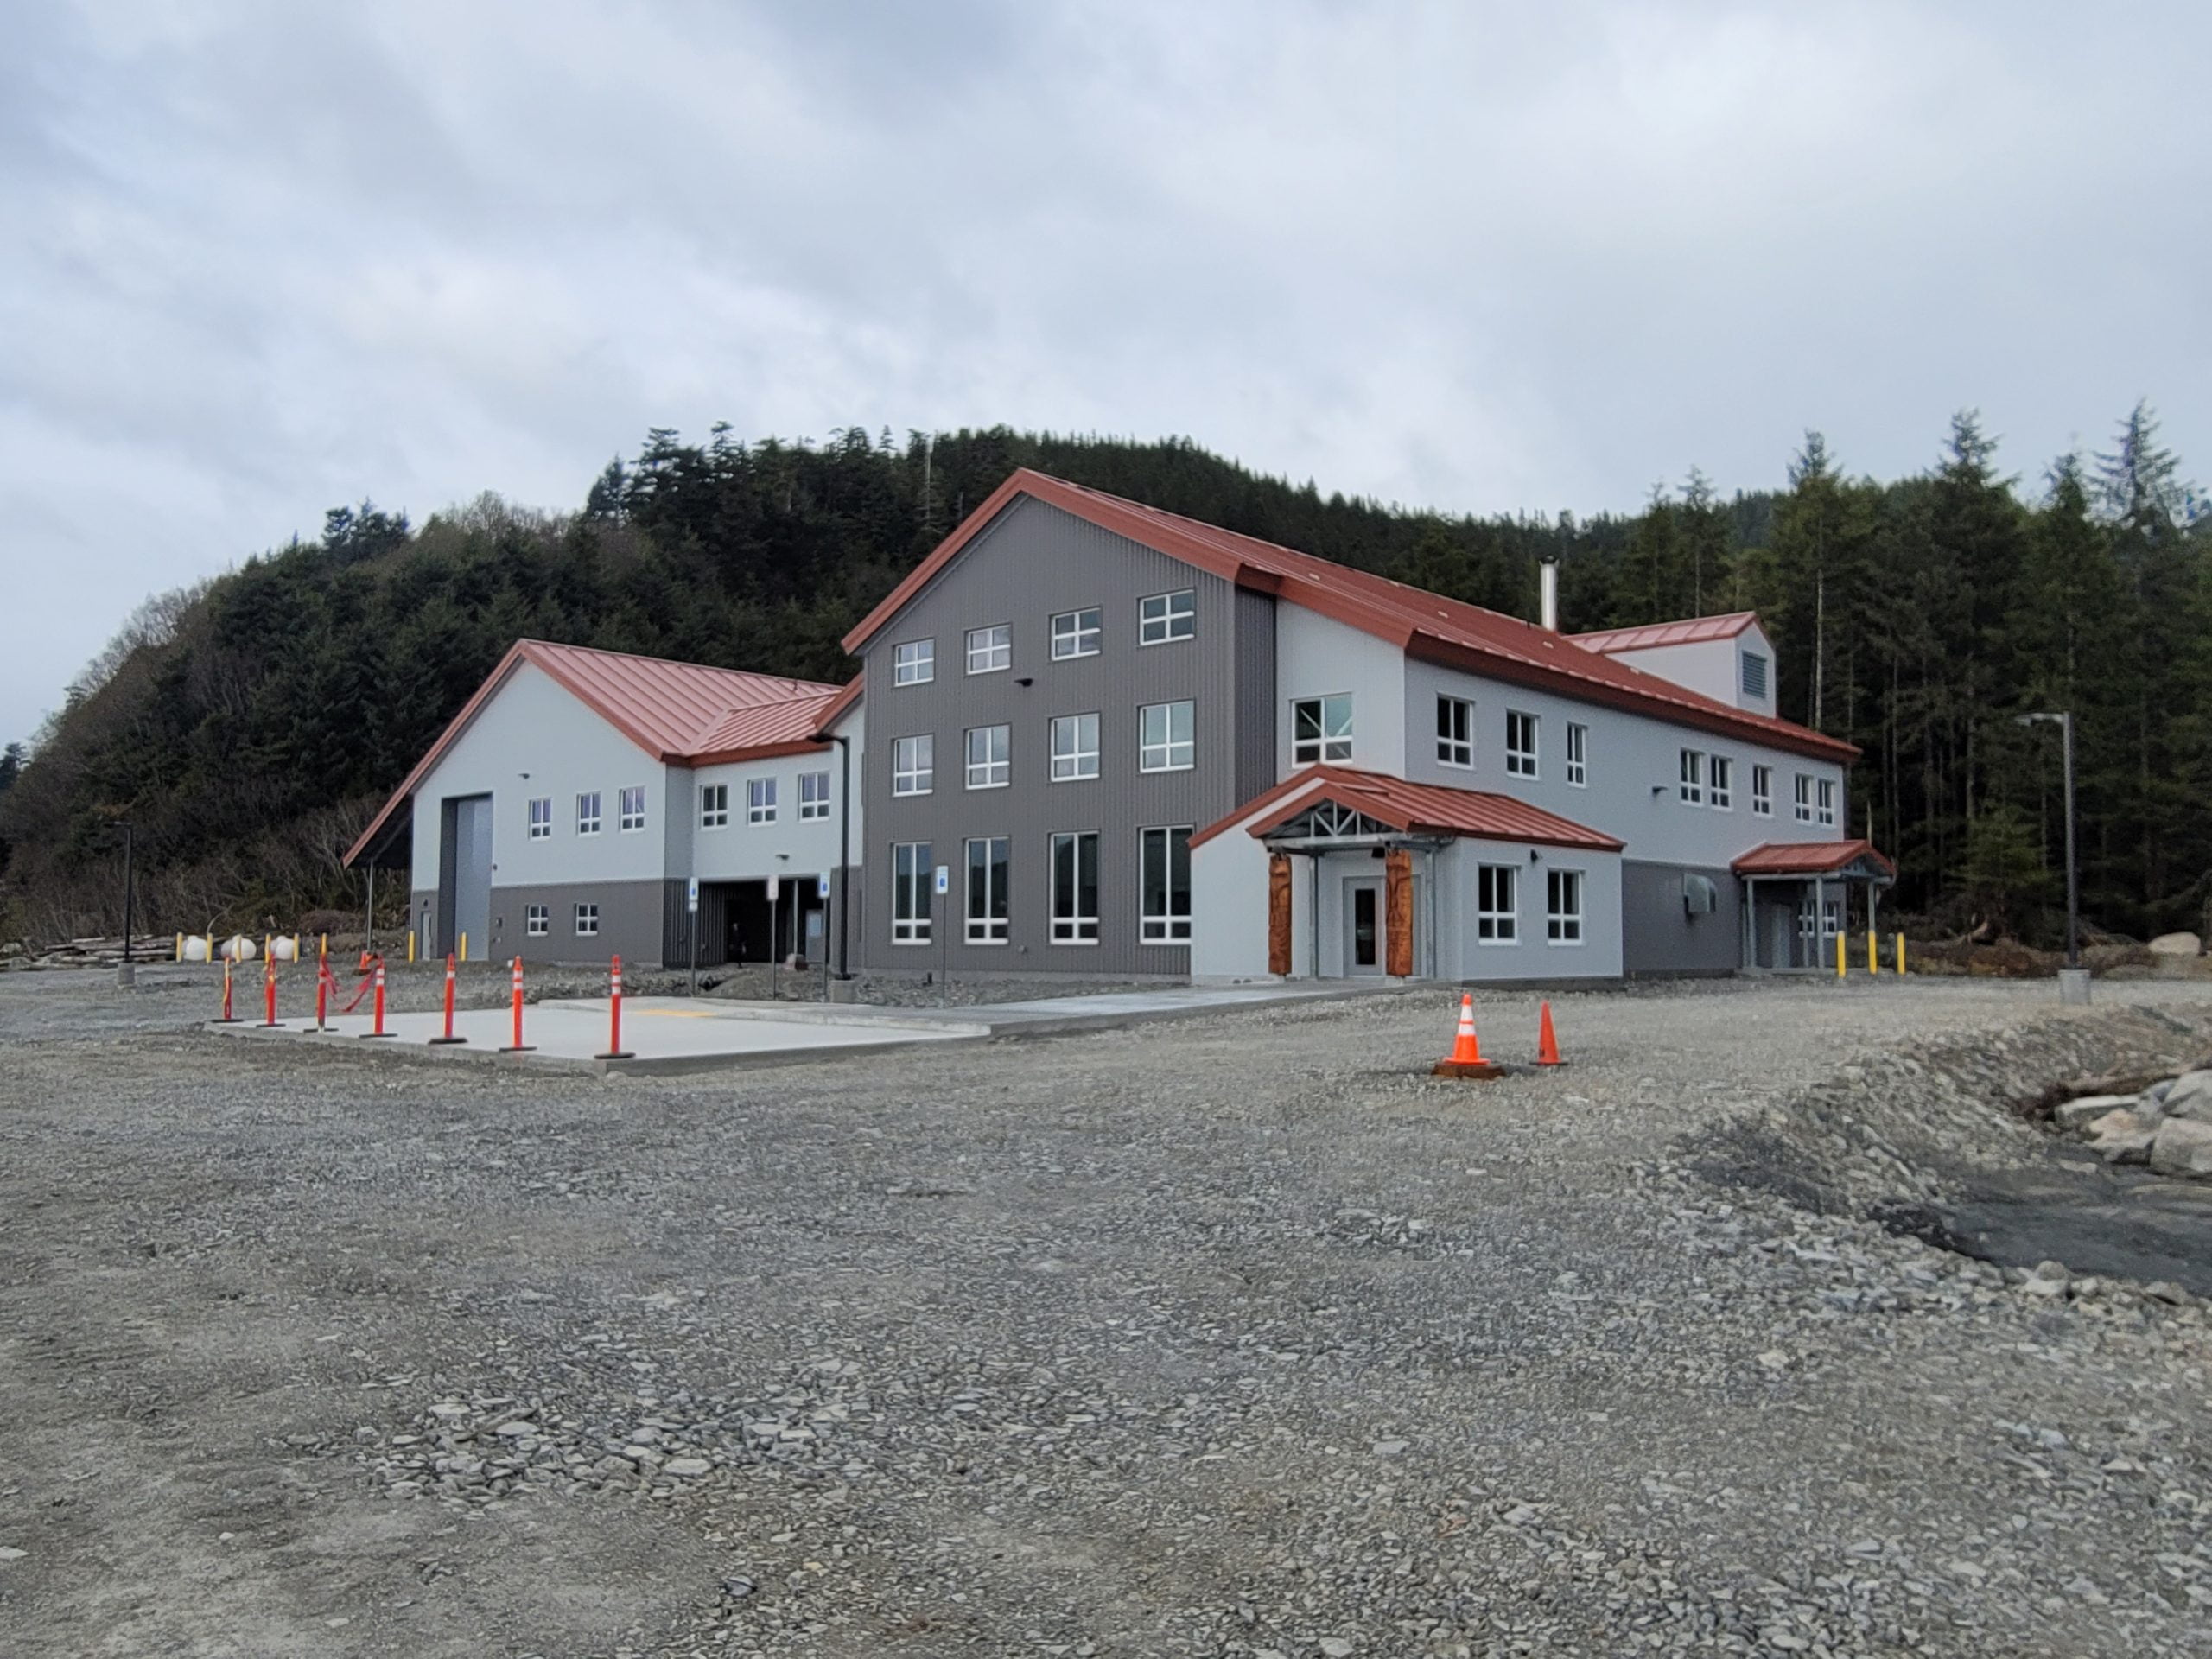 Photo of Prince William Sound Science Center in Cordova, AK.